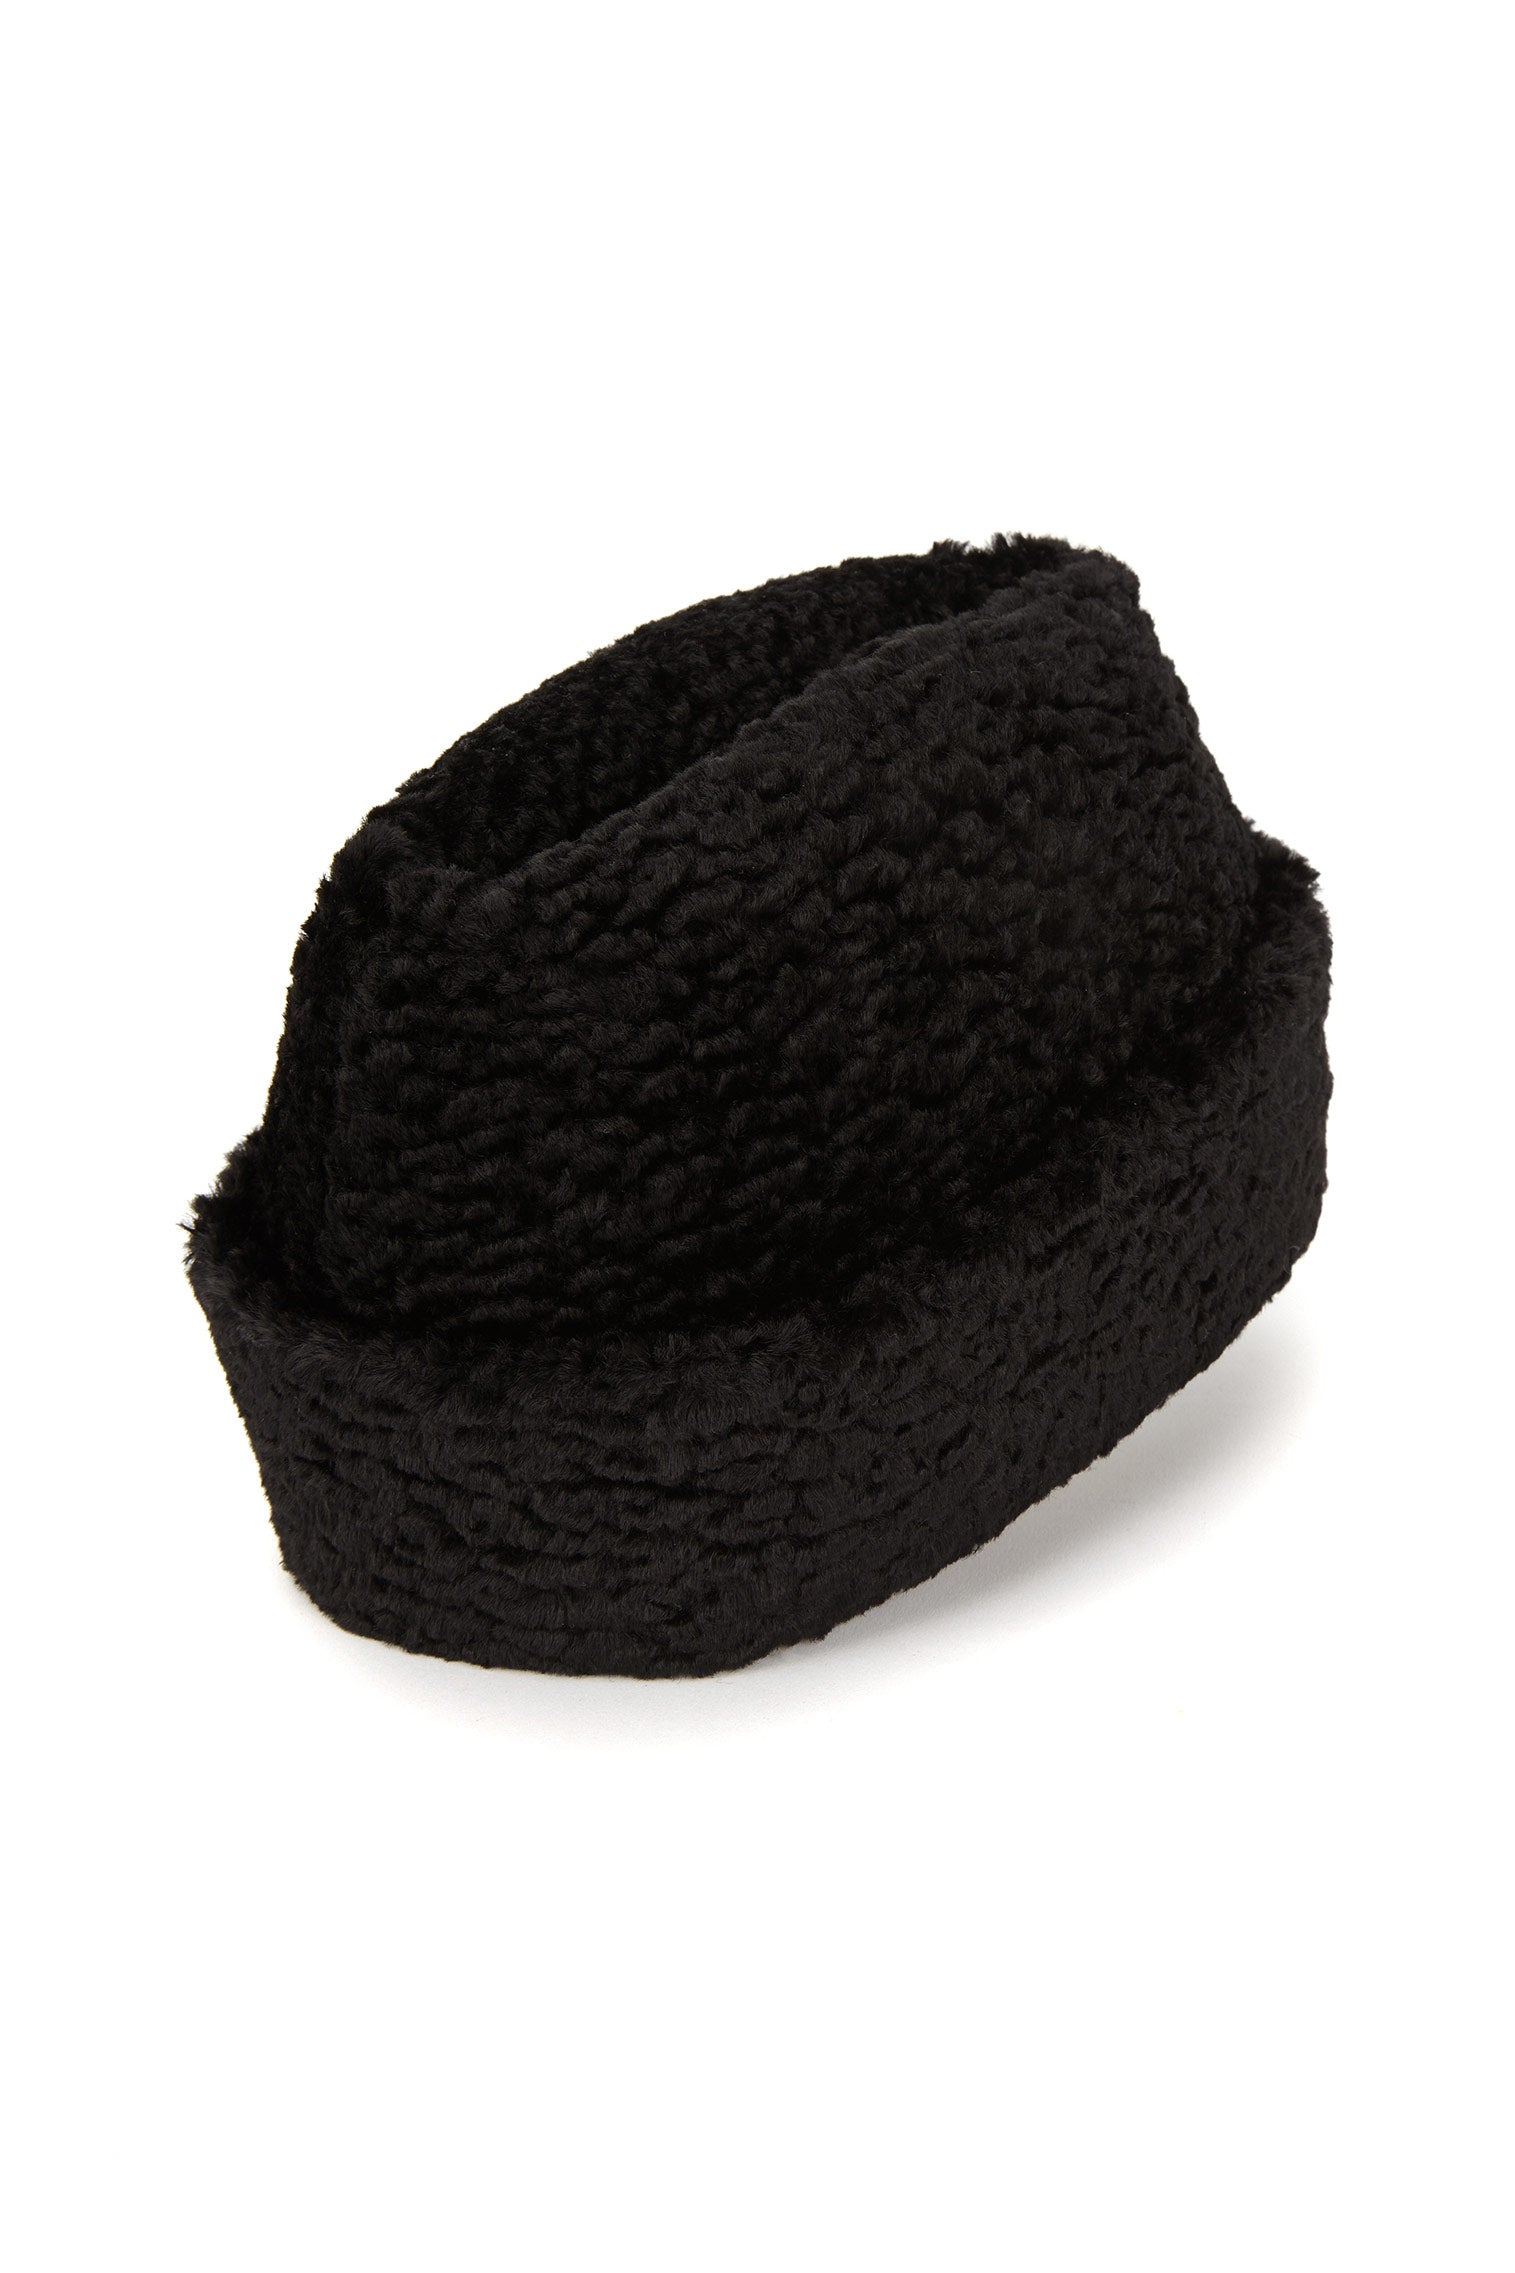 Astrakhan Faux Fur Hat - Winter Hats - Lock & Co. Hatters London UK